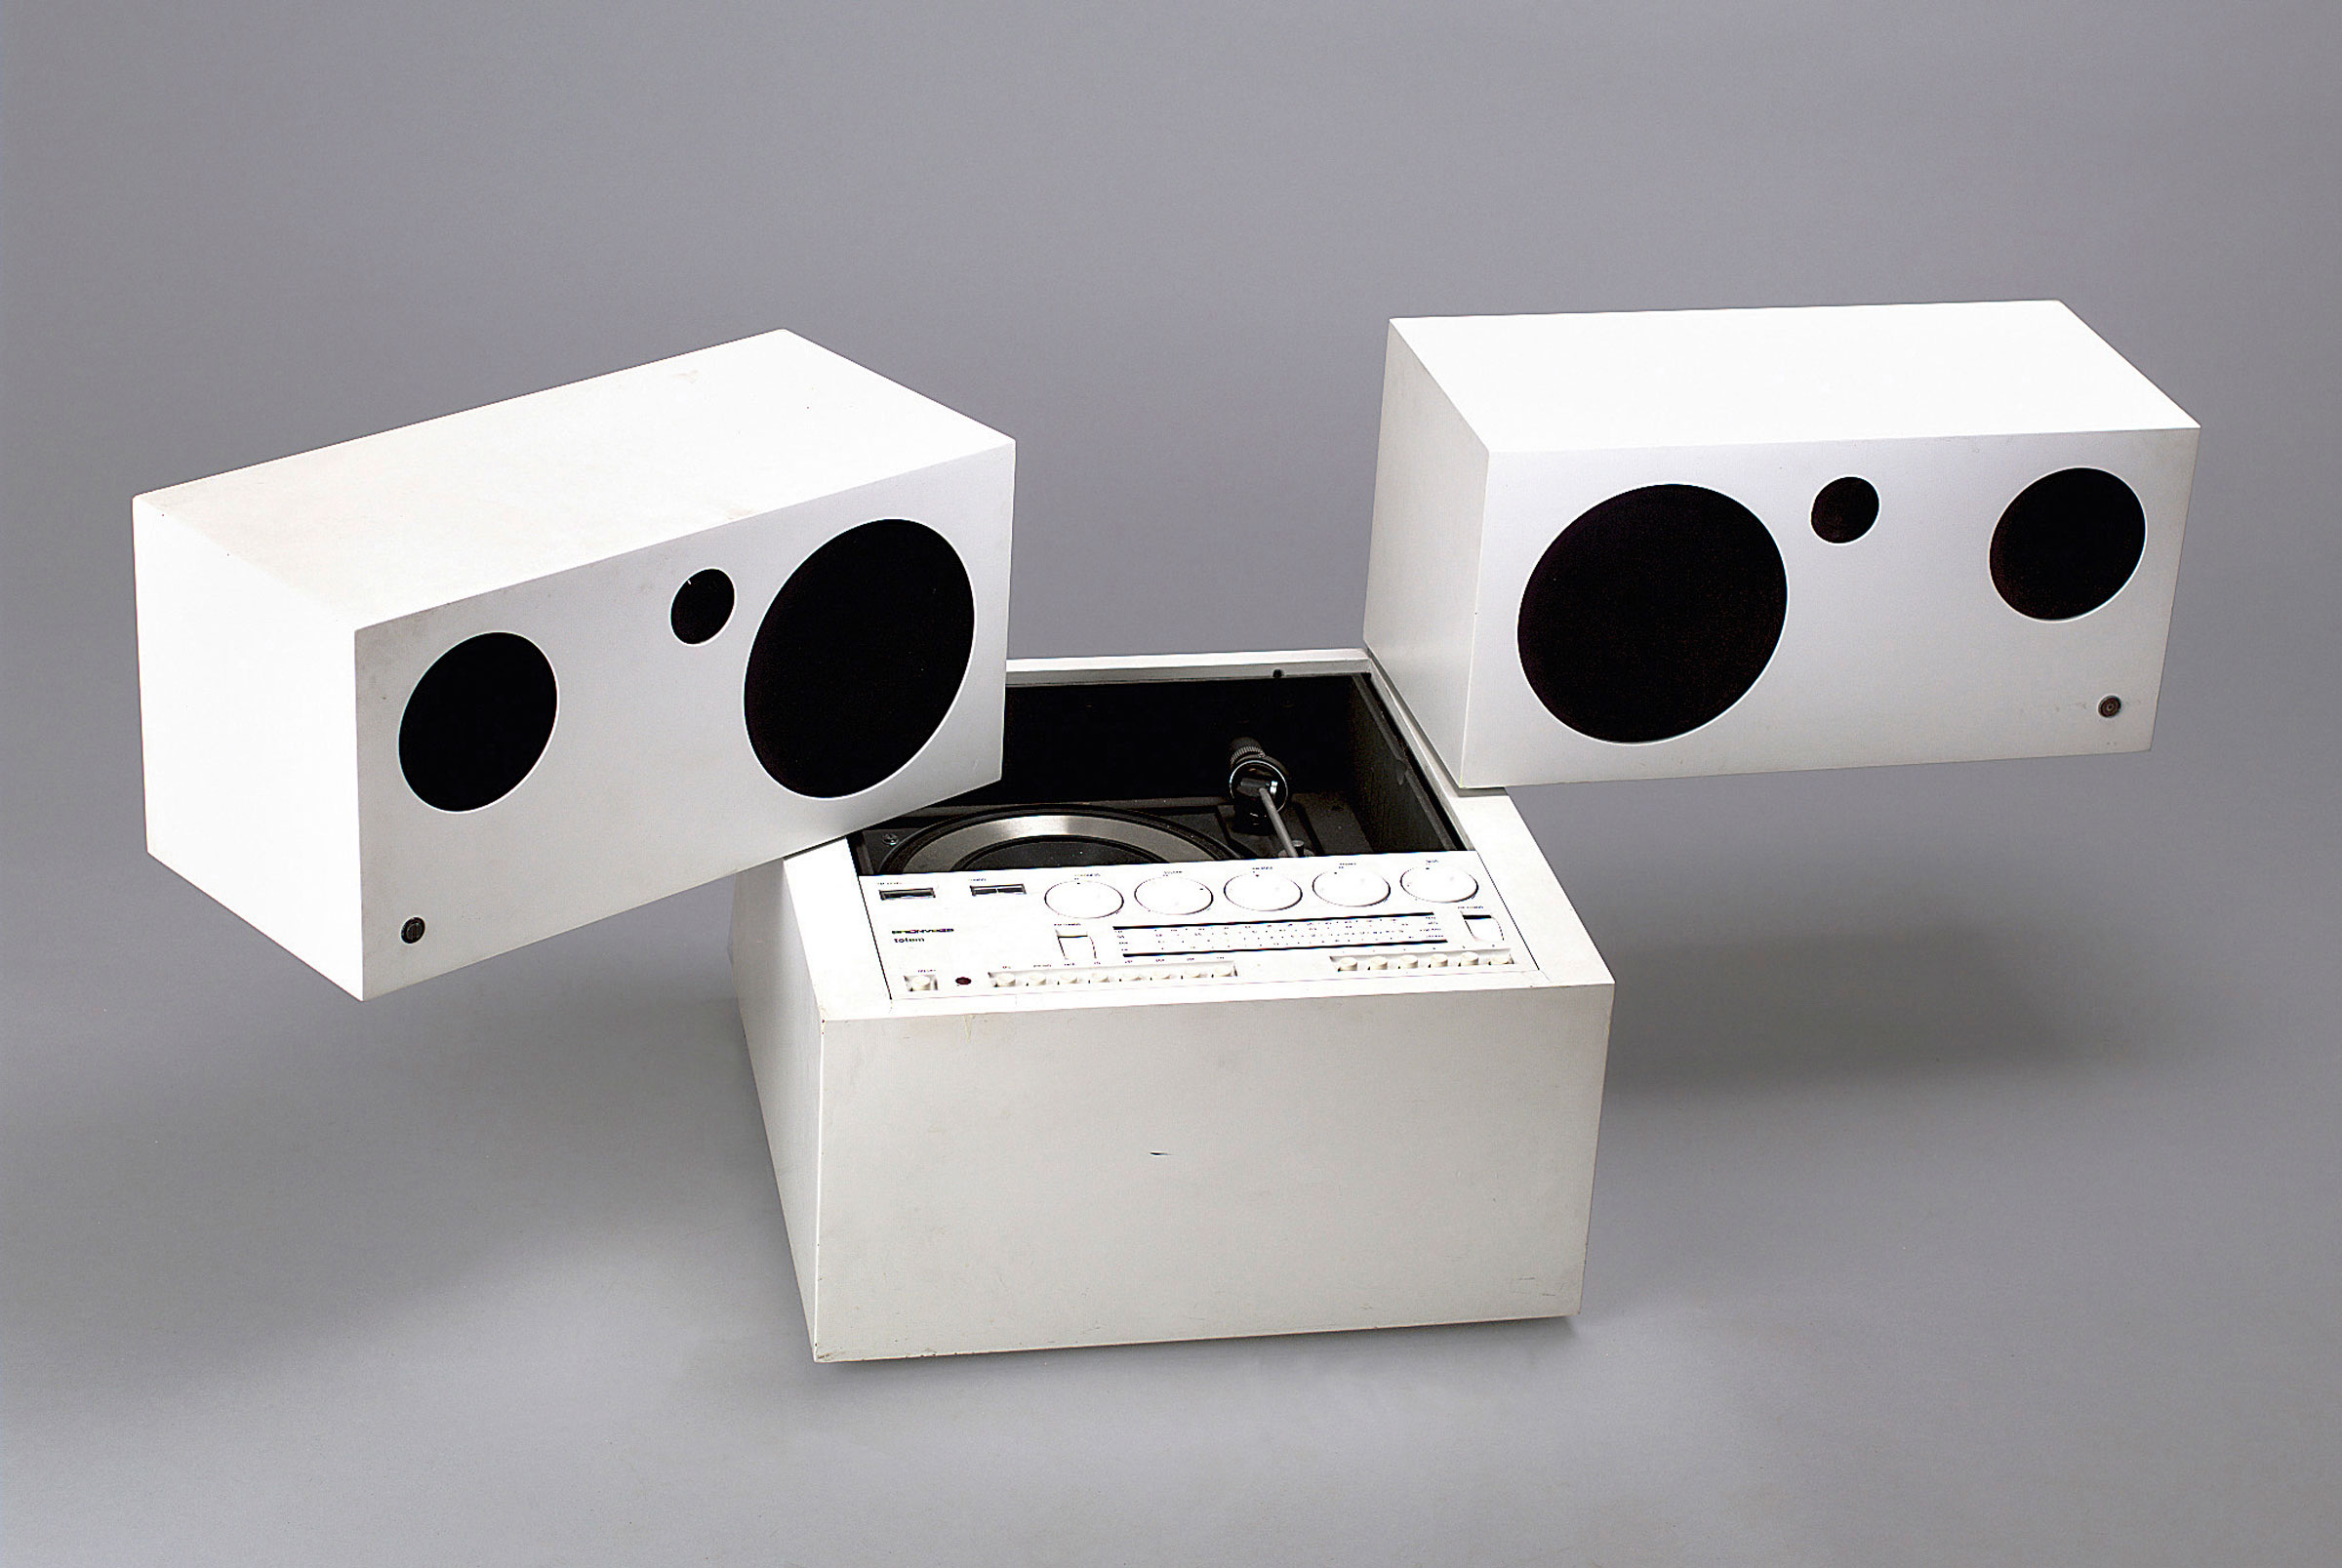 Этот на первый взгляд современный проигрыватель пластинок Totem Stereo System RR130 представили в далеком 1977 году. Даже сейчас эта модель выглядит интересно и свежо, а полвека назад за нее, возможно, даже дрались.